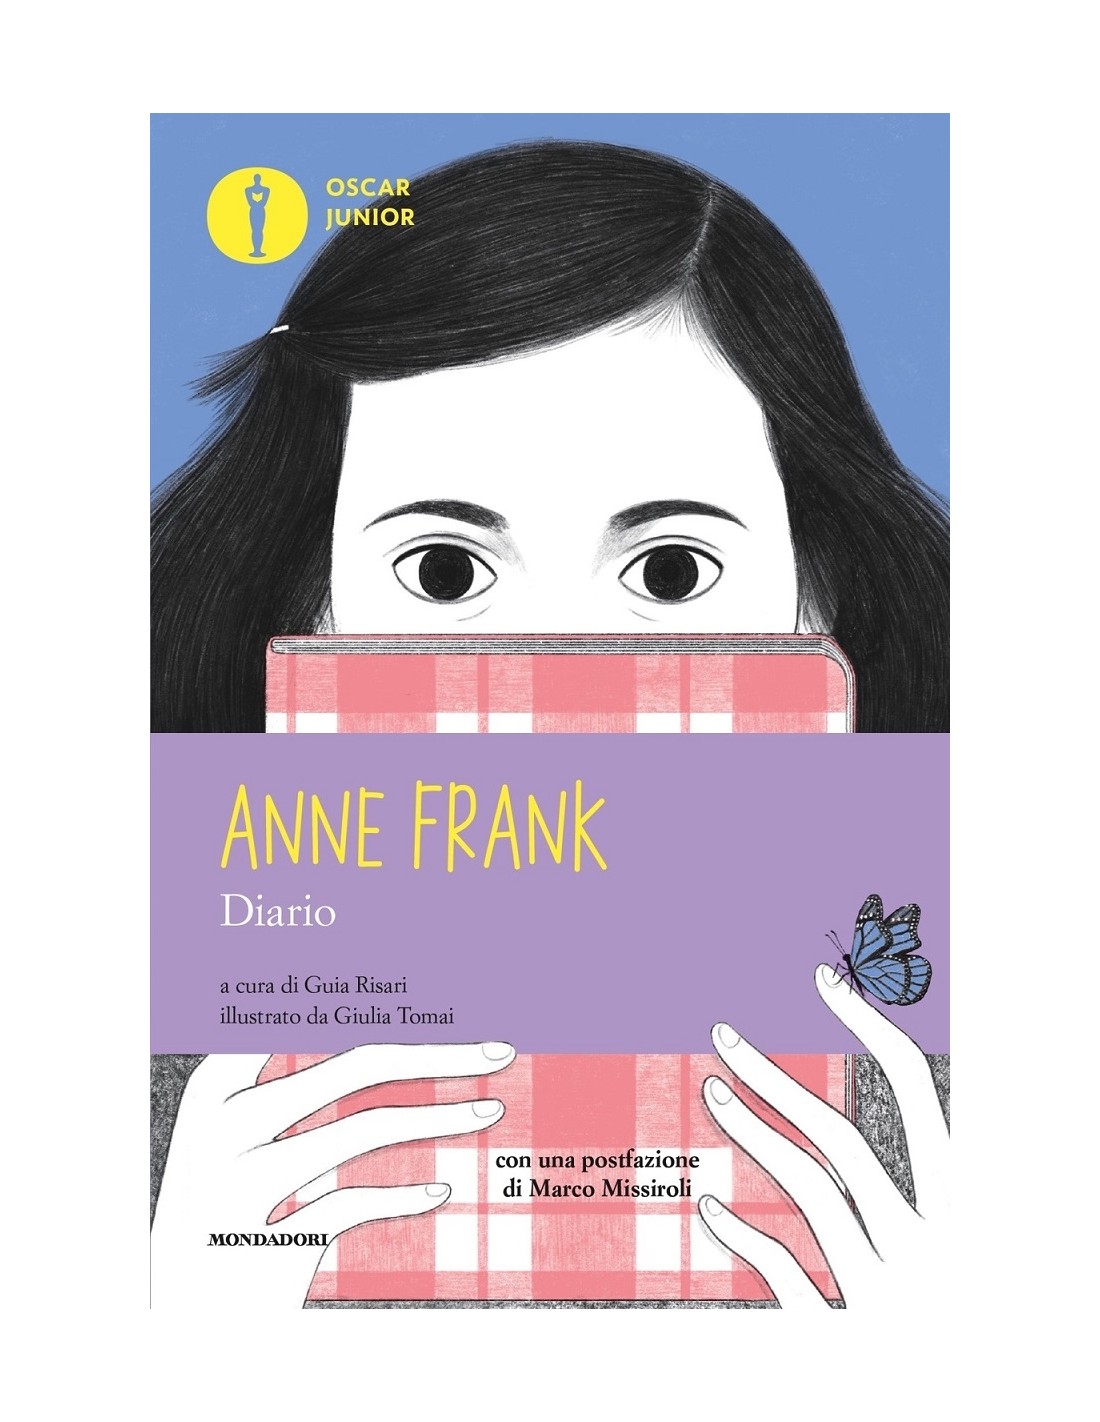 DIARIO: il diario di Anna frank